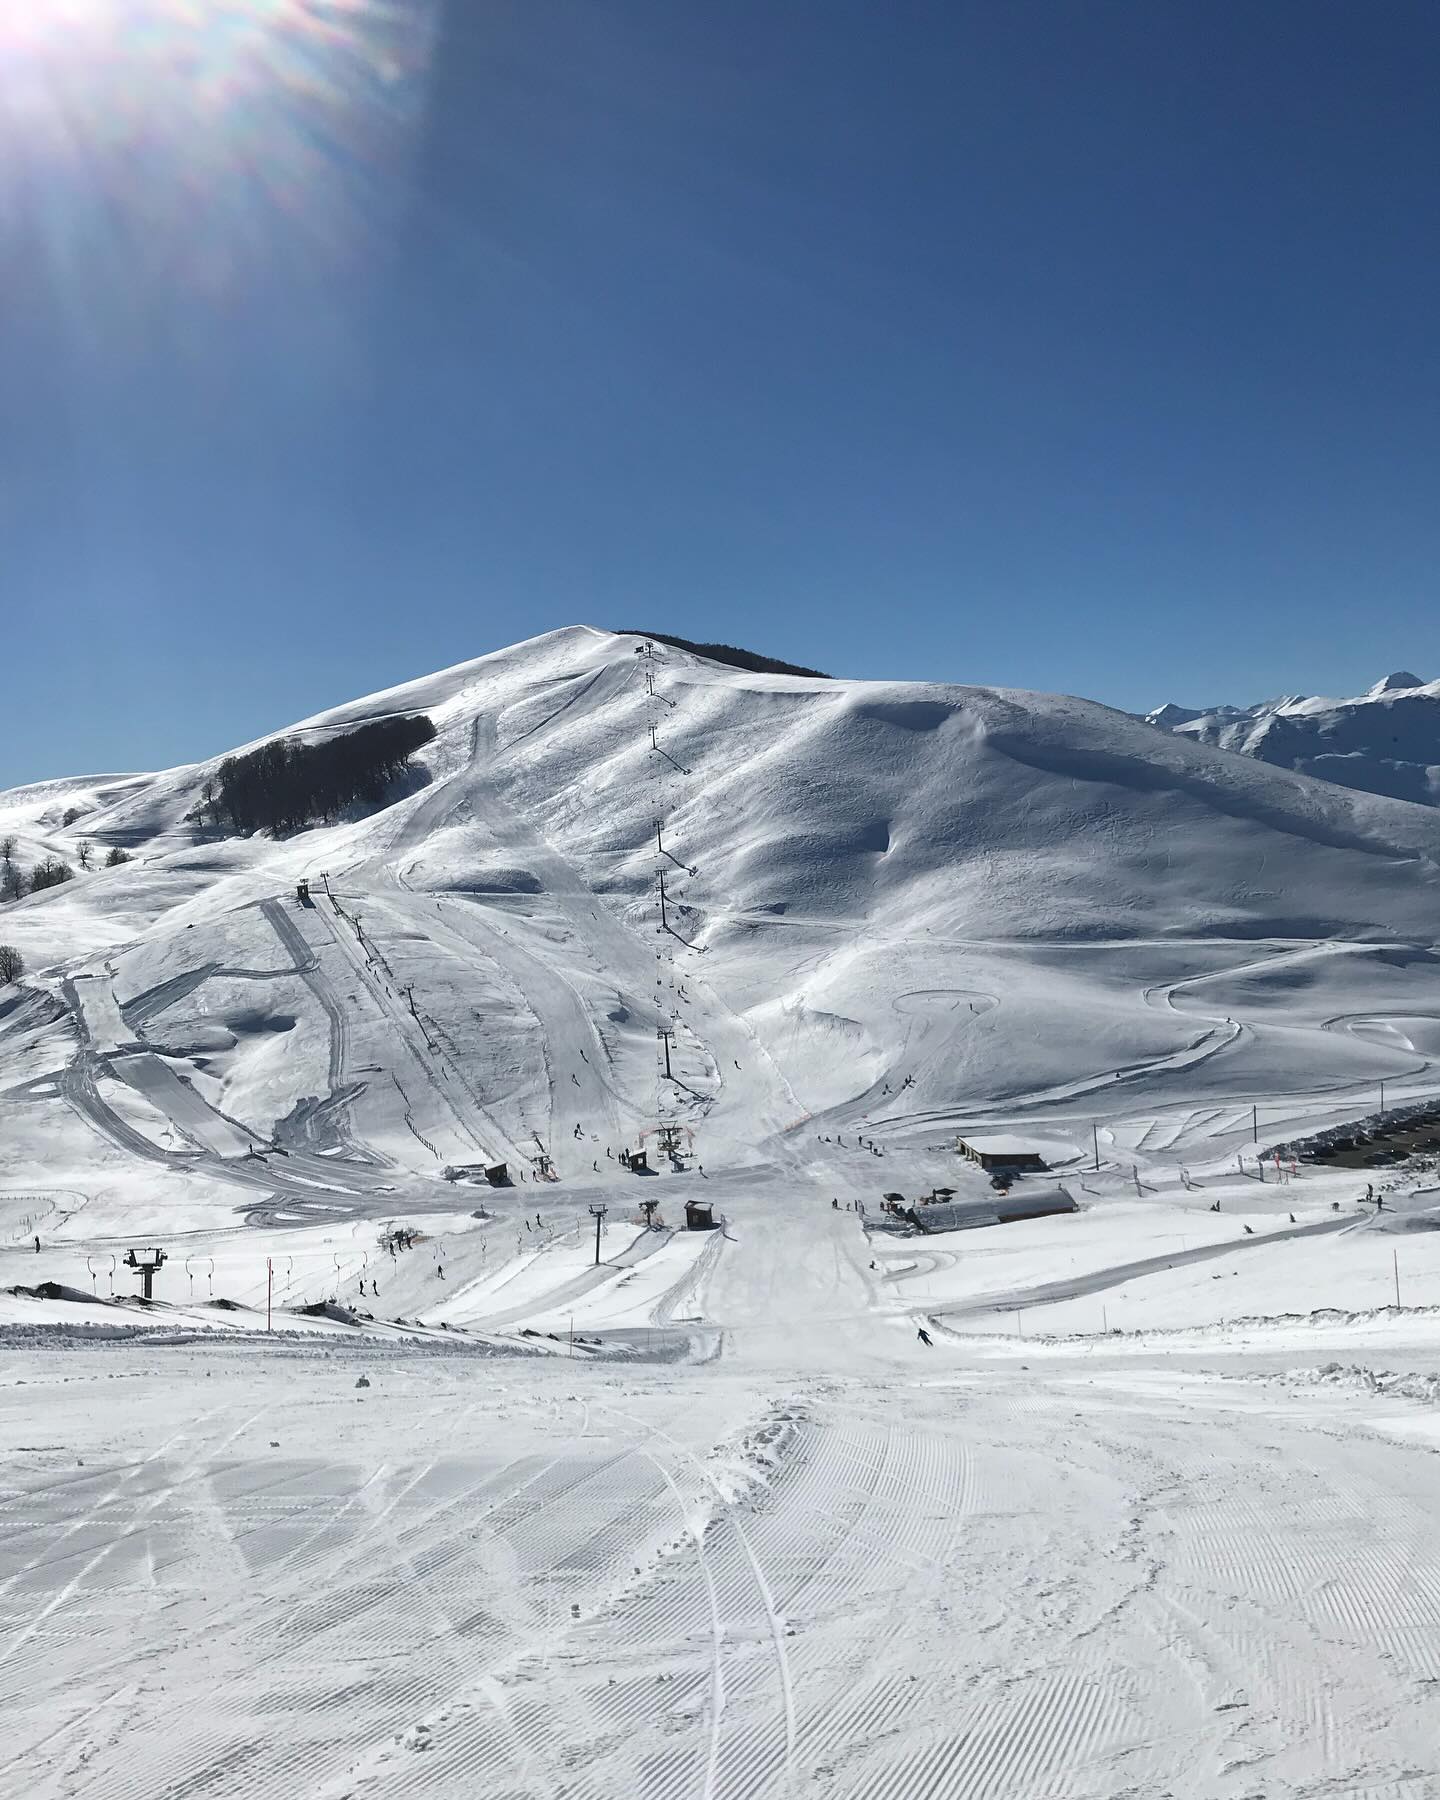 Χειμερινά σπορ: Τα ελληνικά χιονοδρομικά κέντρα που λειτουργούν και πρόκειται να ανοίξουν
